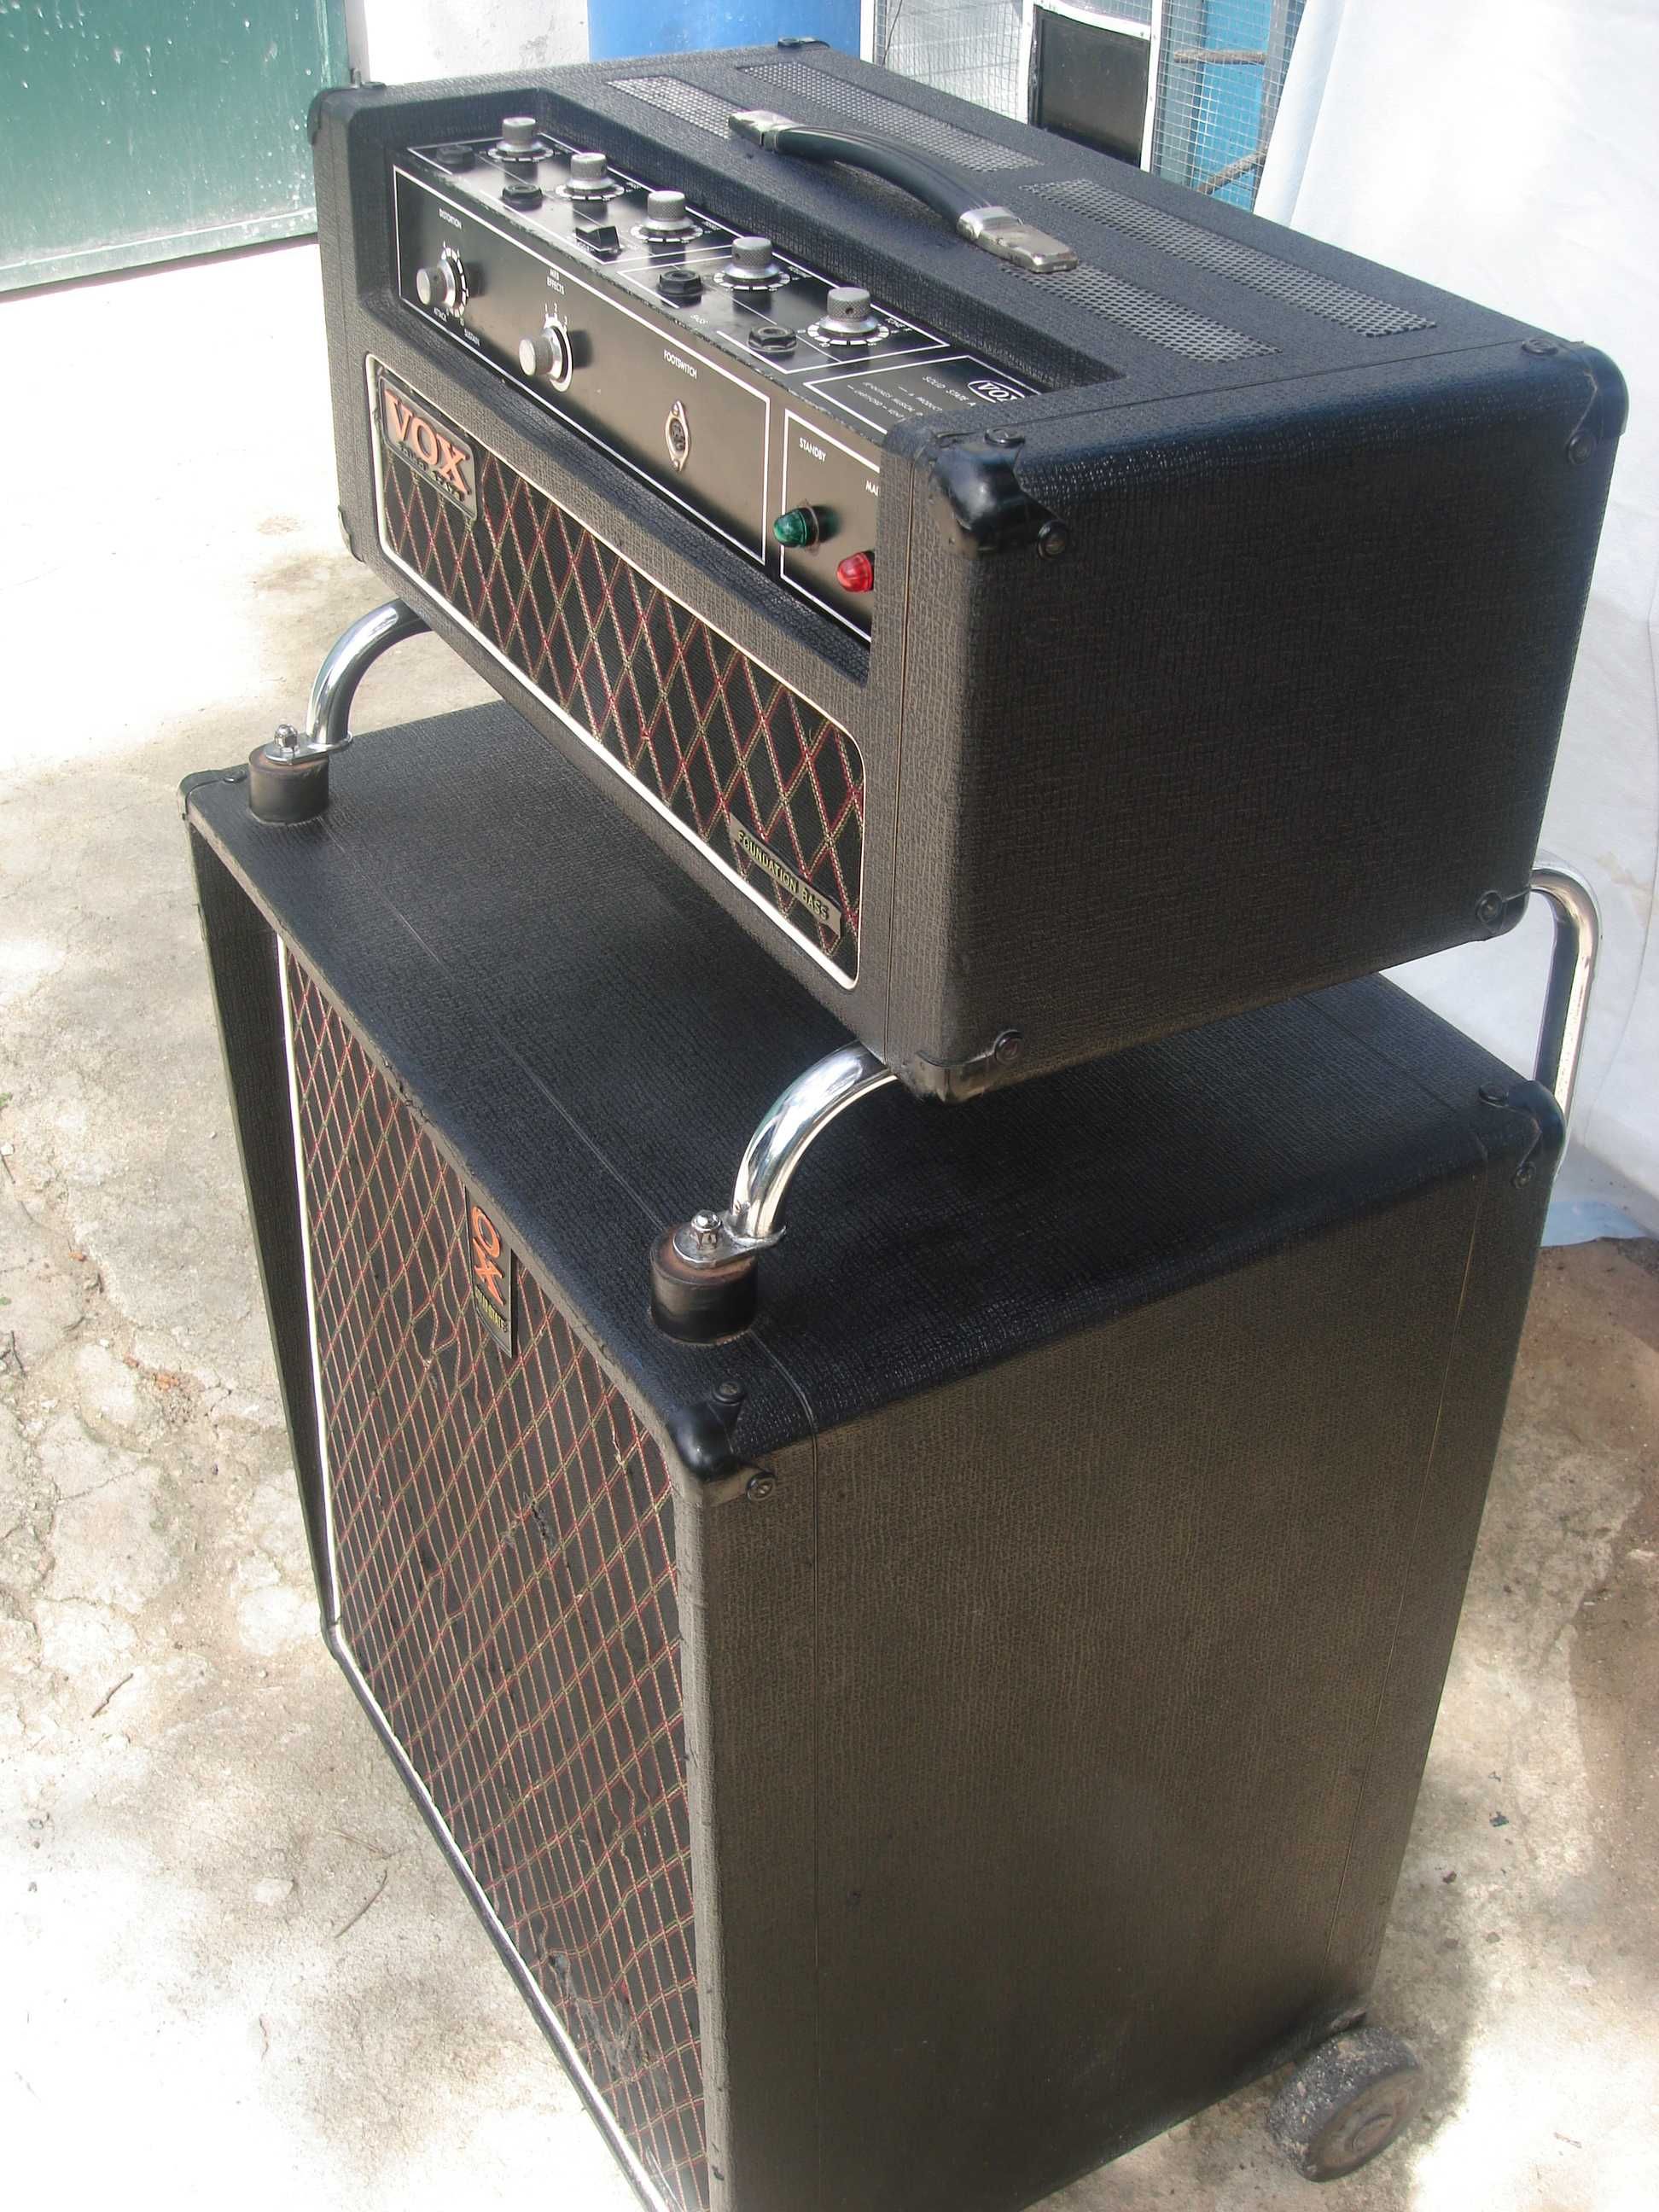 VOX (Foundations) Amplificador de guitarra baixo.